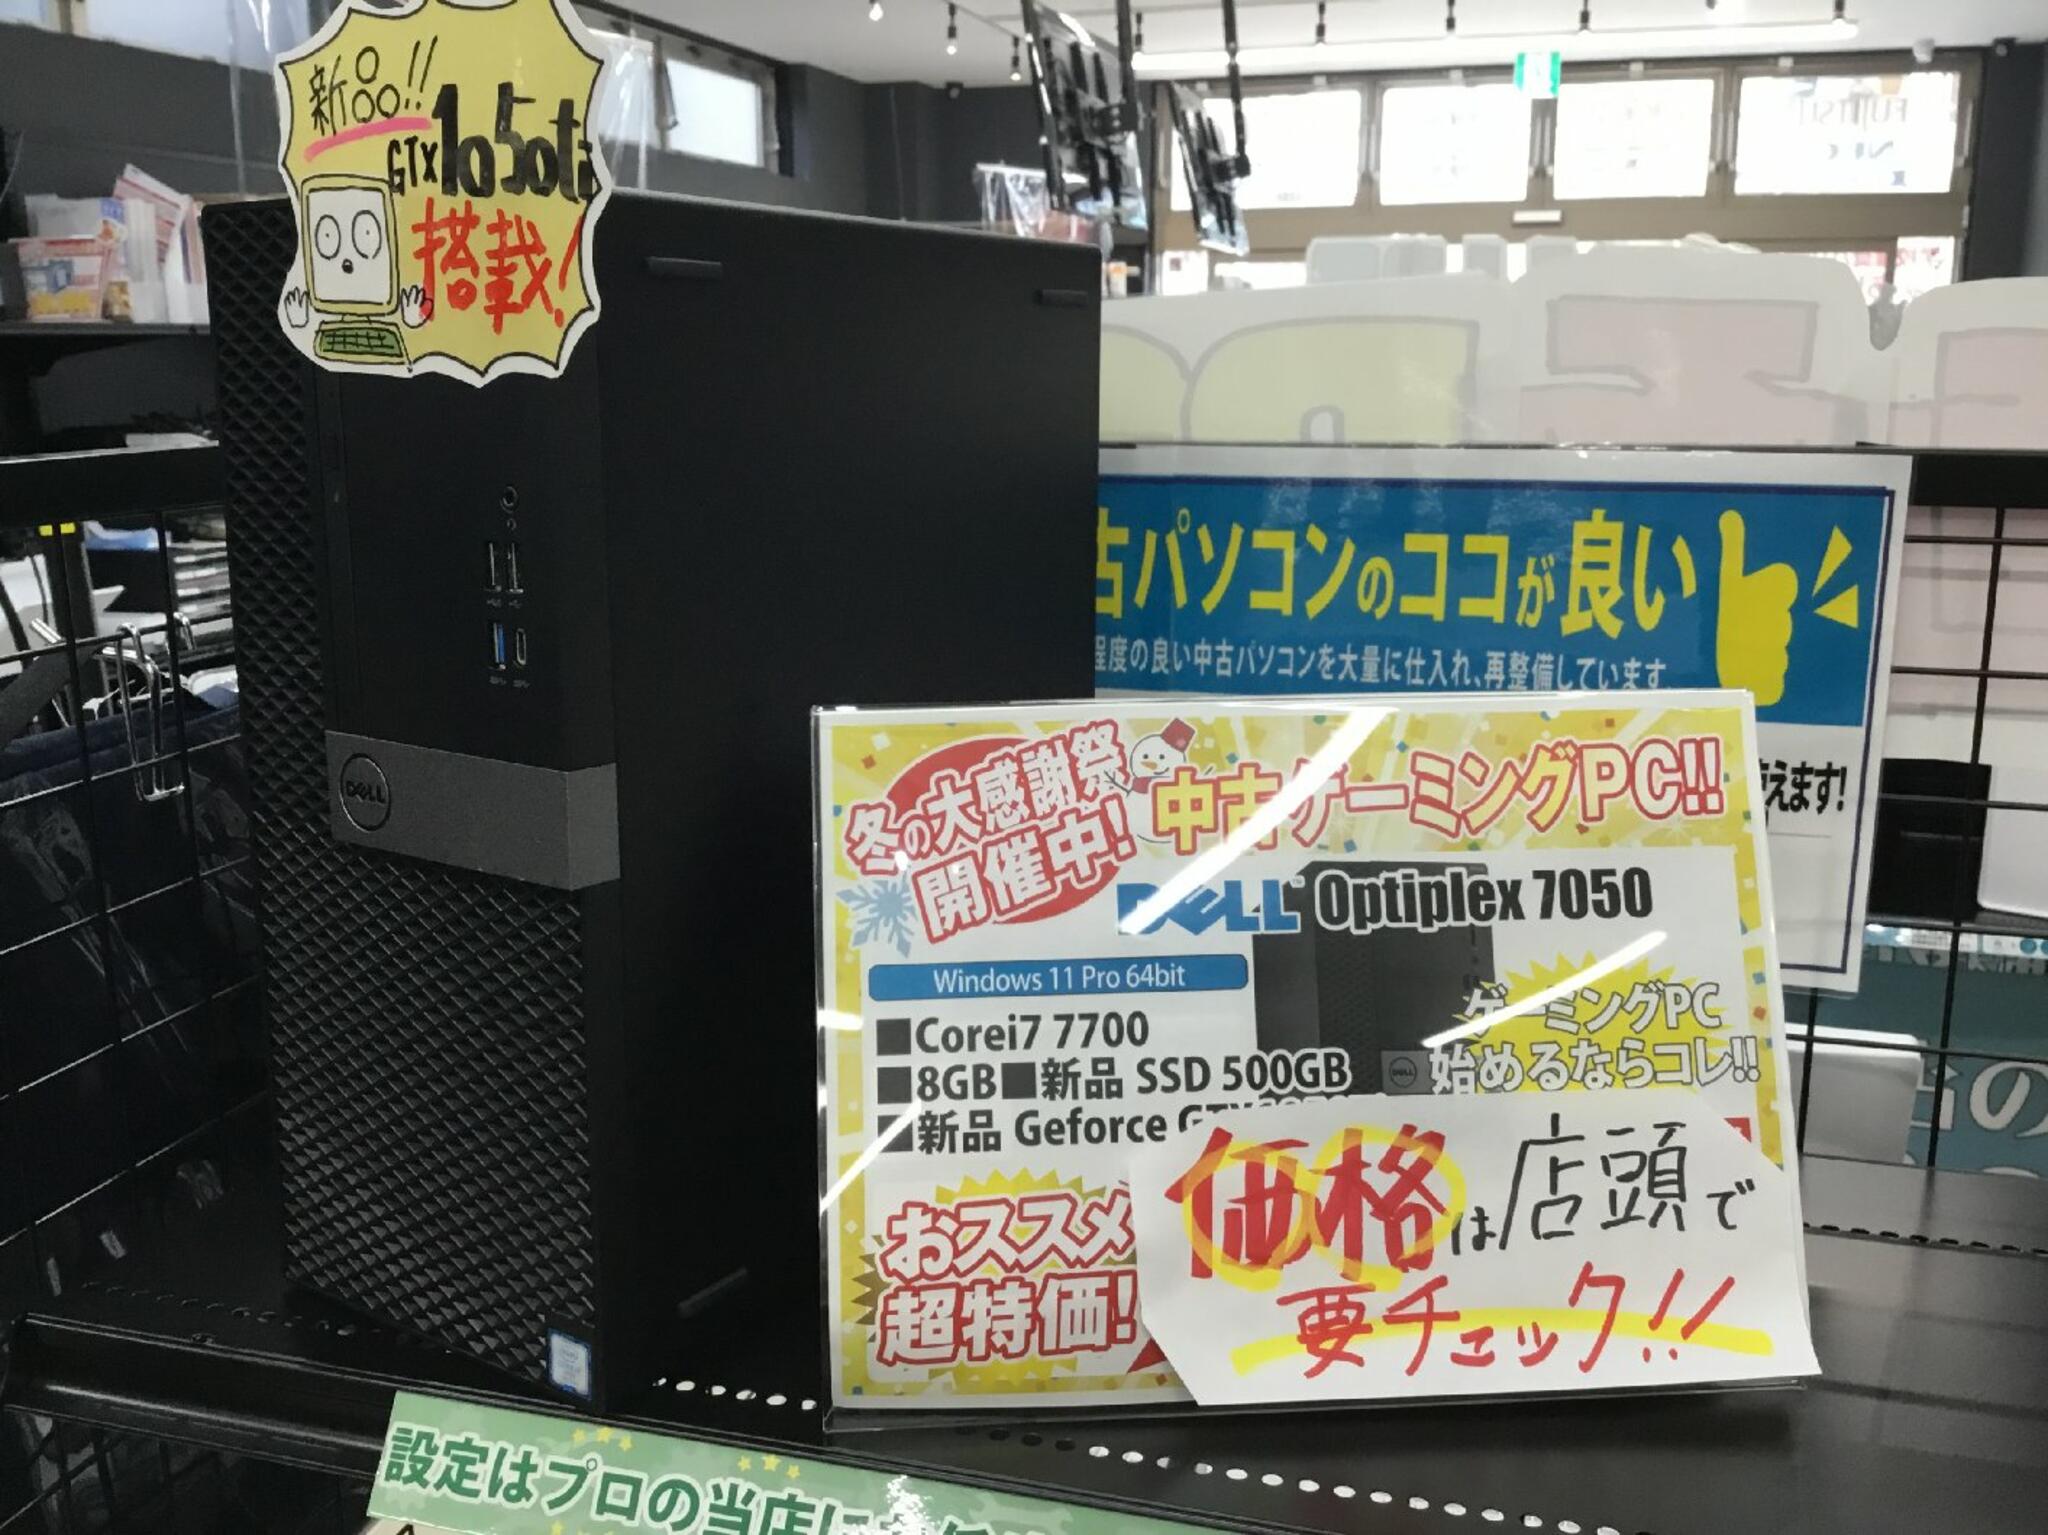 パソコン専門店 大西ジム 新長田店からのお知らせ(中古カスタムゲーミングＰＣ入荷致しました！)に関する写真